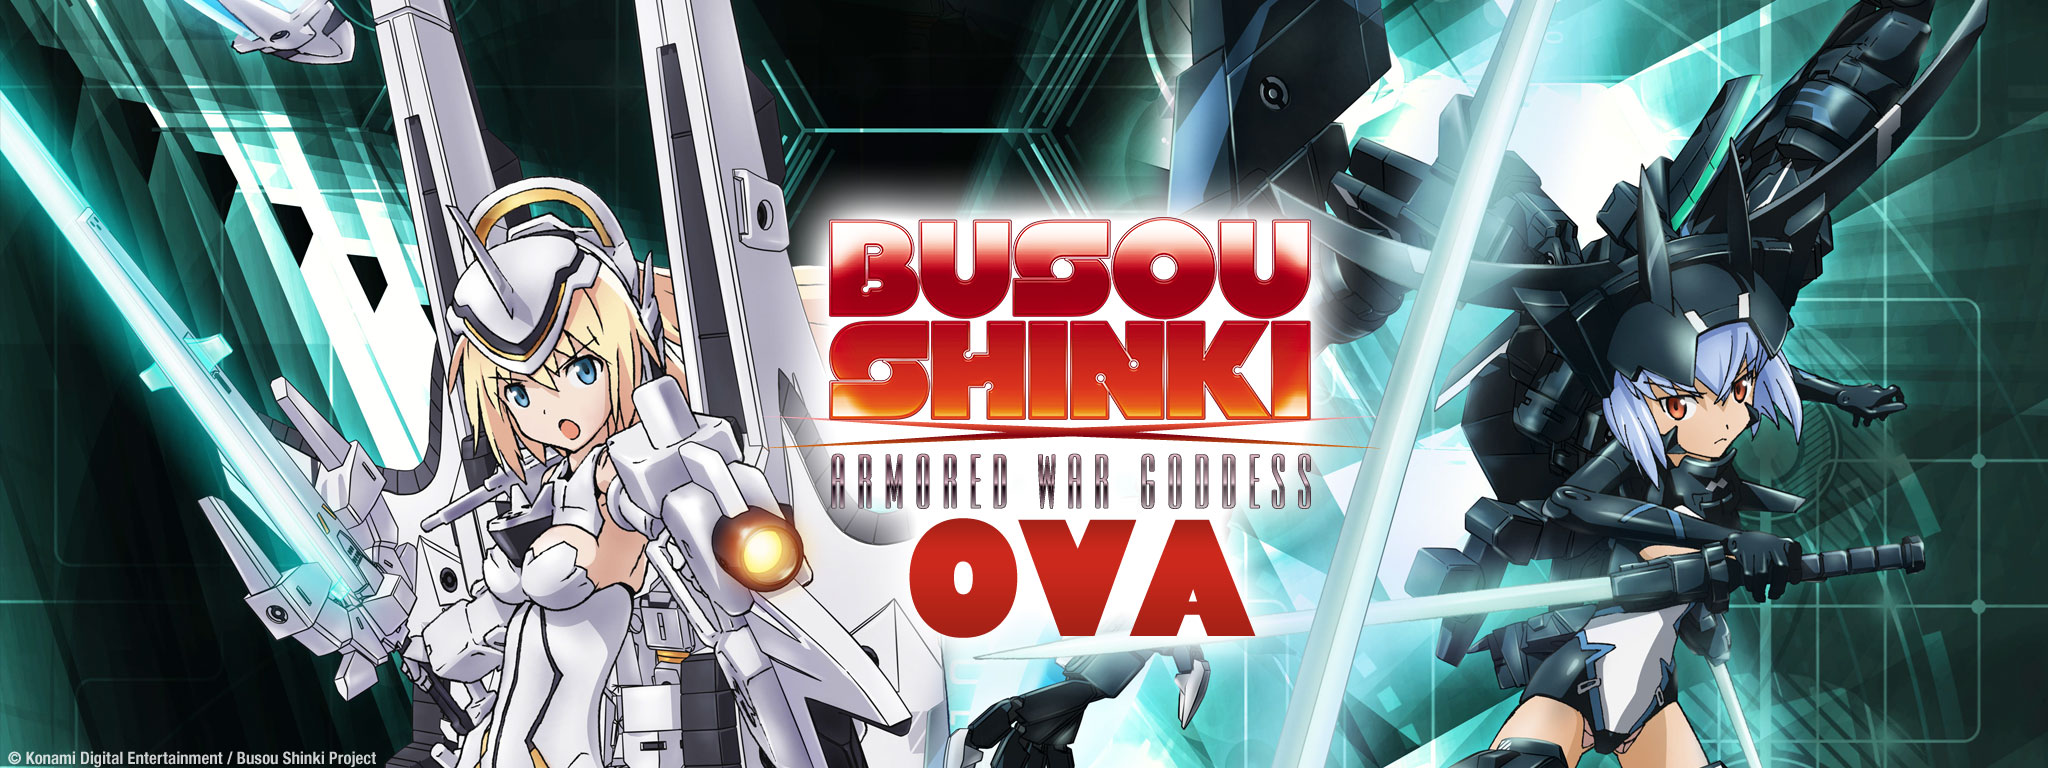 Title Art for Busou Shinki - OVA